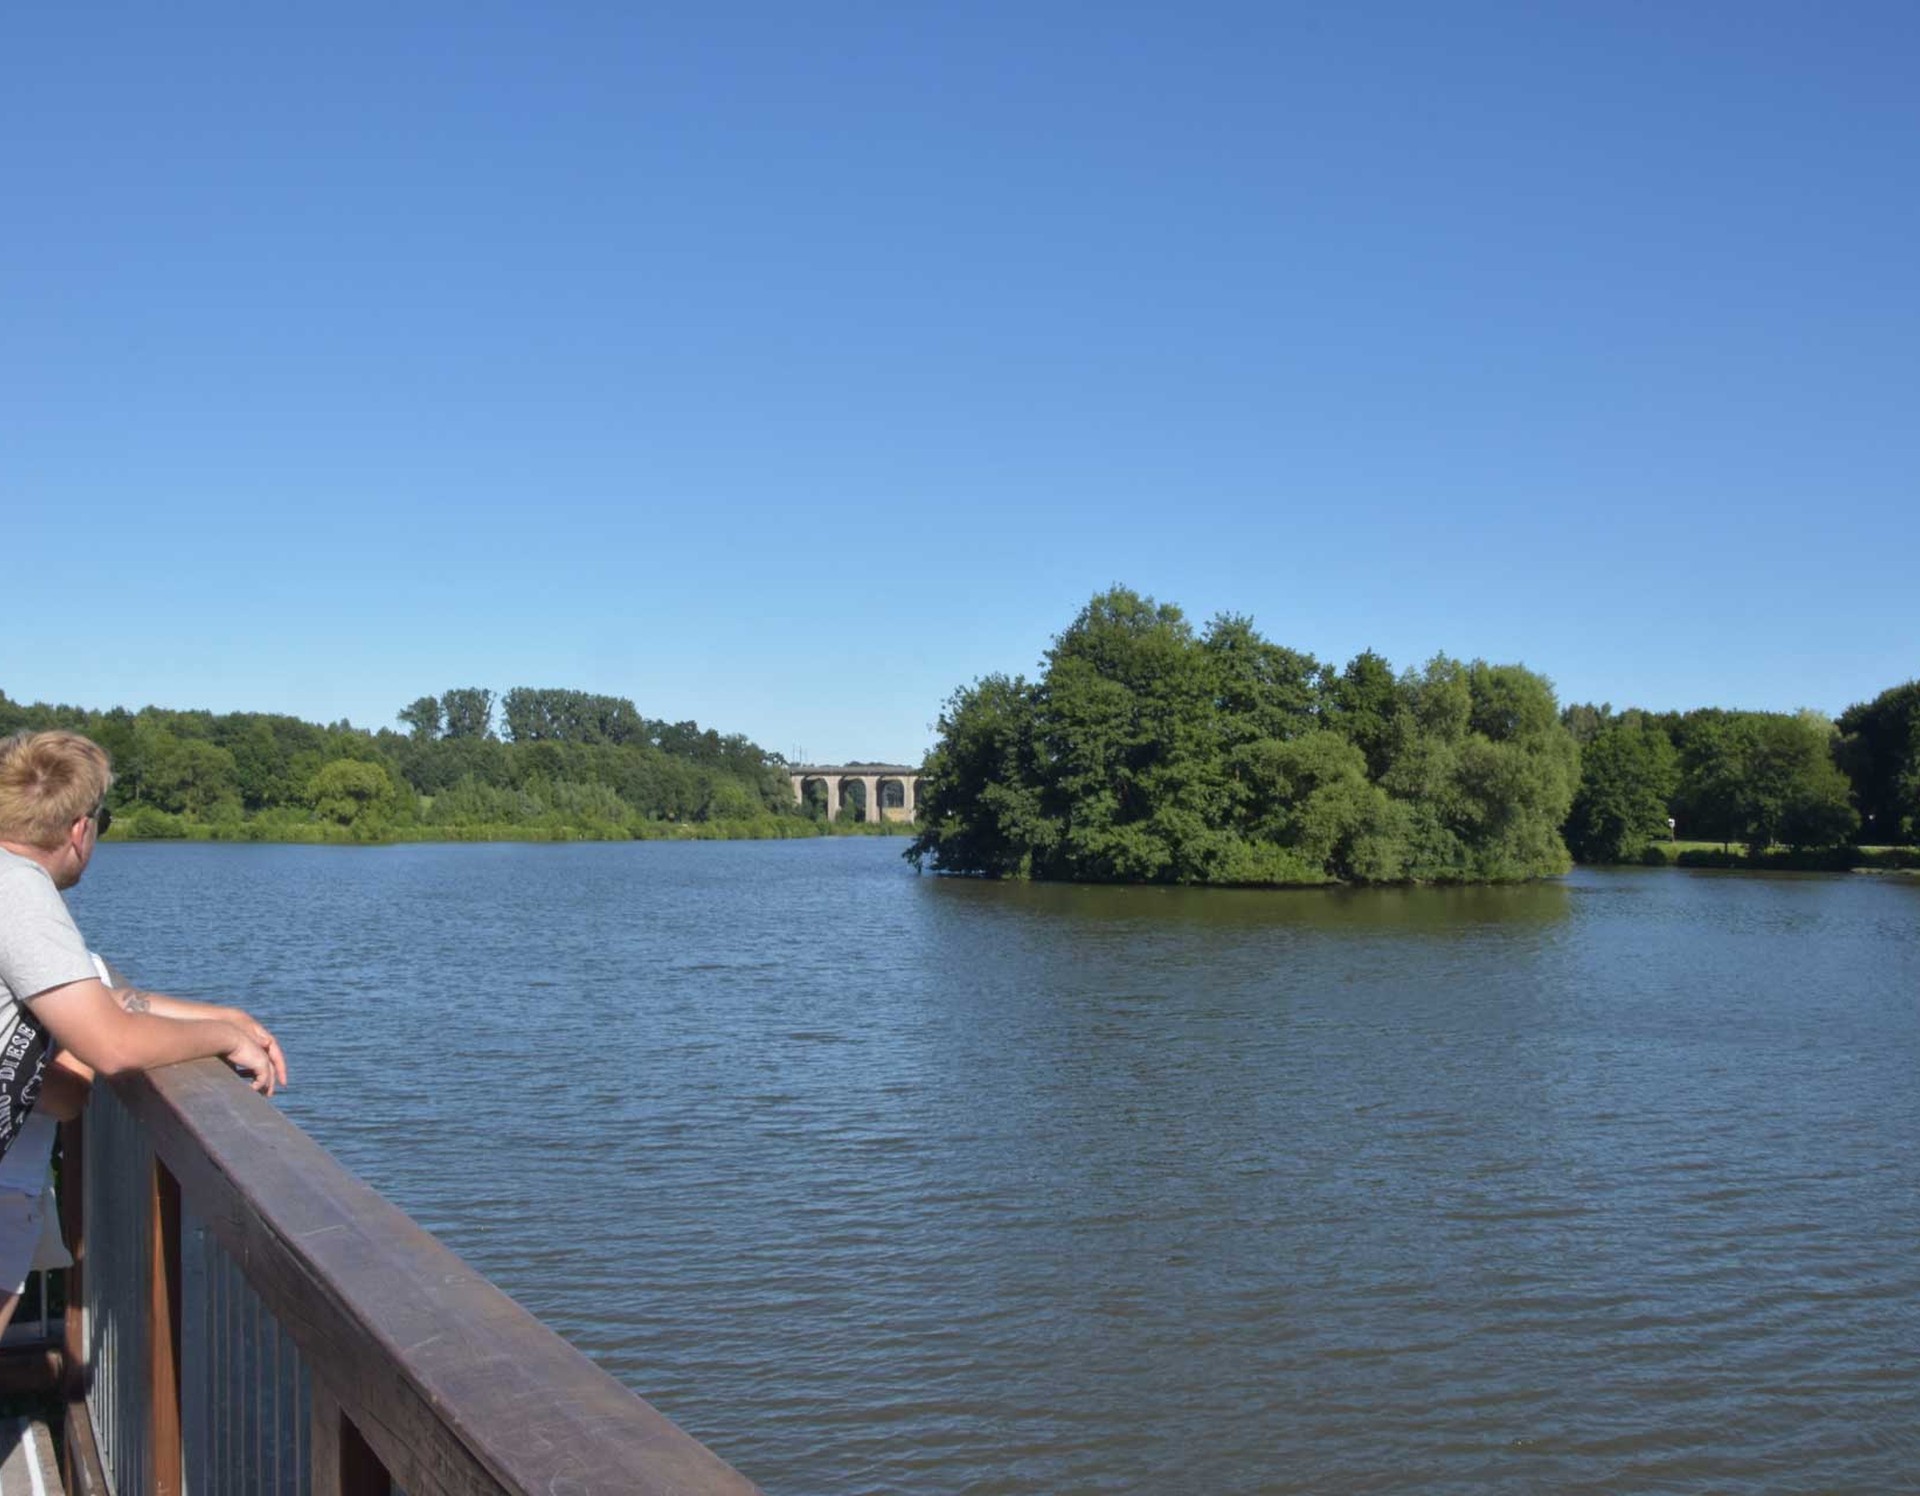 Blick auf den Obersee in Bielefeld von einer Aussichtsplattform. Zu sehen ist eine der Inseln im See. Links davon ist das Schildescher Viadukt sichtbar.